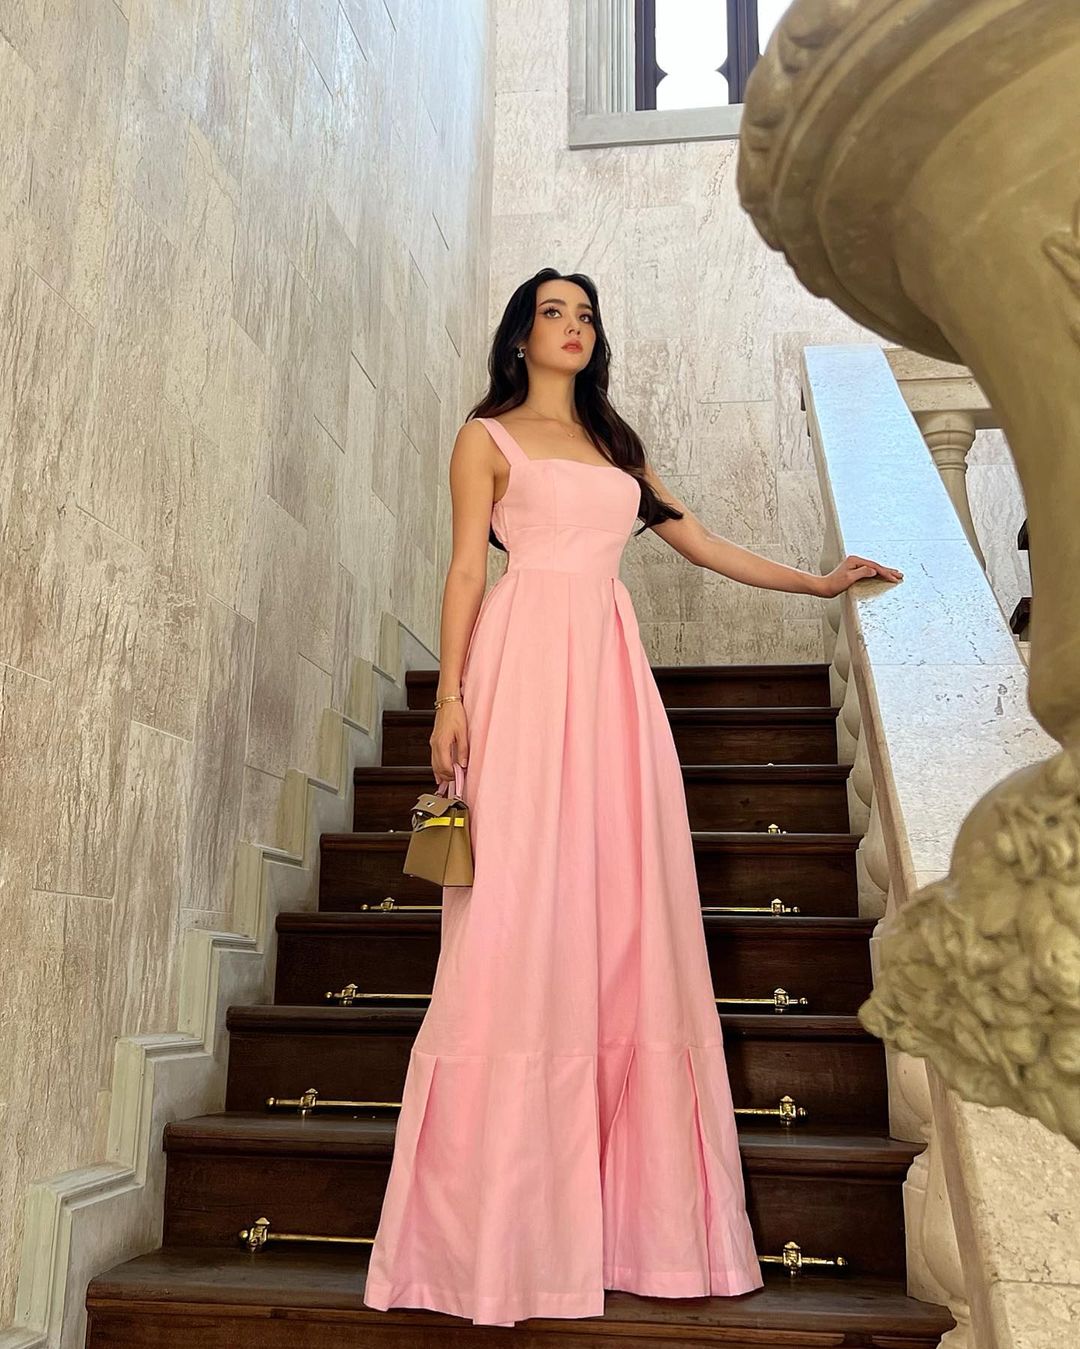 穿著 the.lookbook.select 粉紅色 Leeann 長裙的公主站在樓梯上。